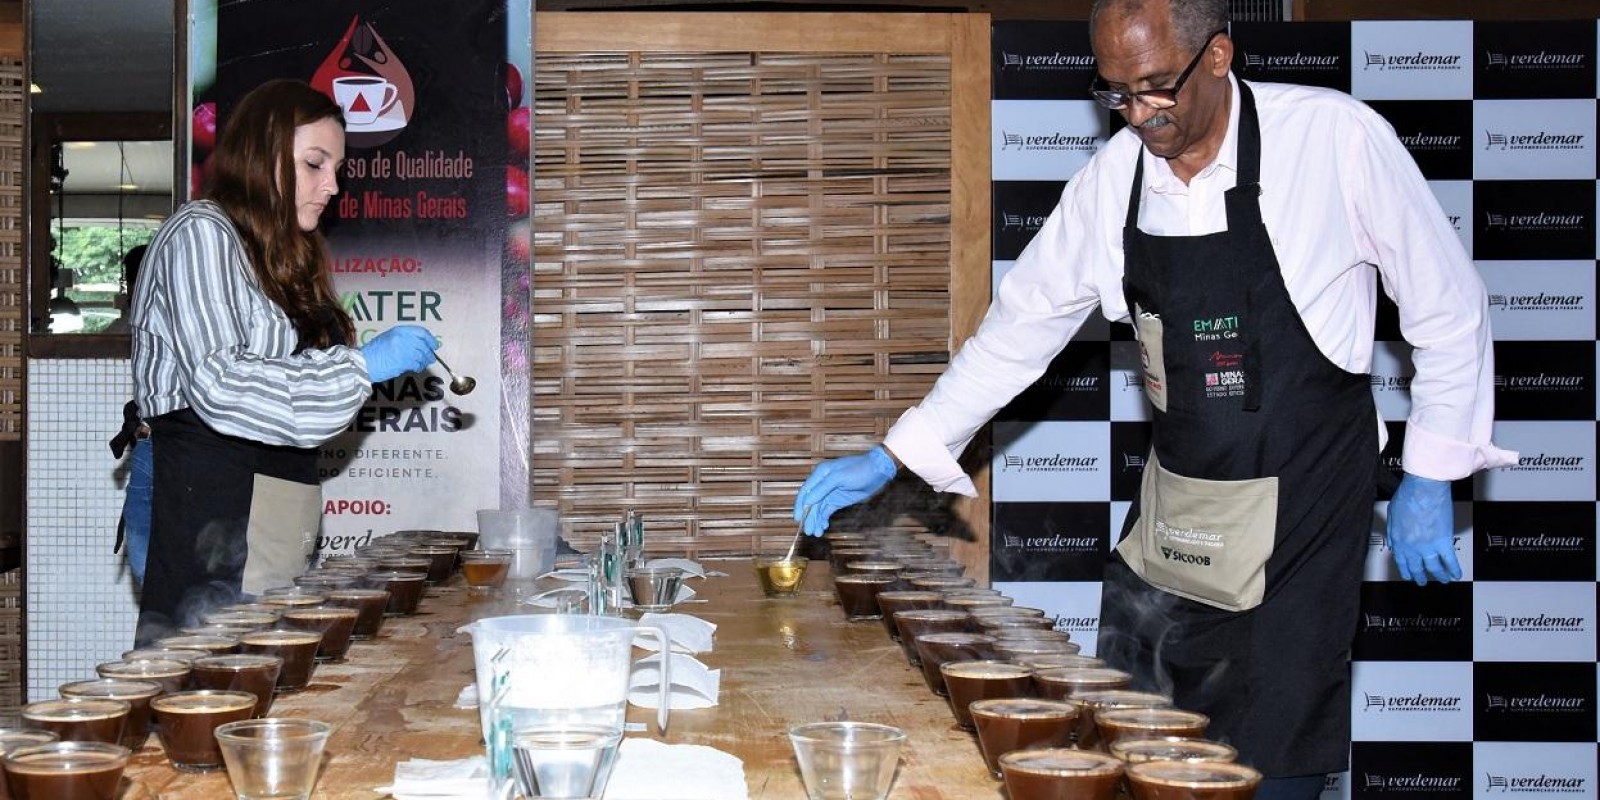 Especialistas destacam qualidade dos grãos finalistas do Concurso de Qualidade dos Cafés de Minas